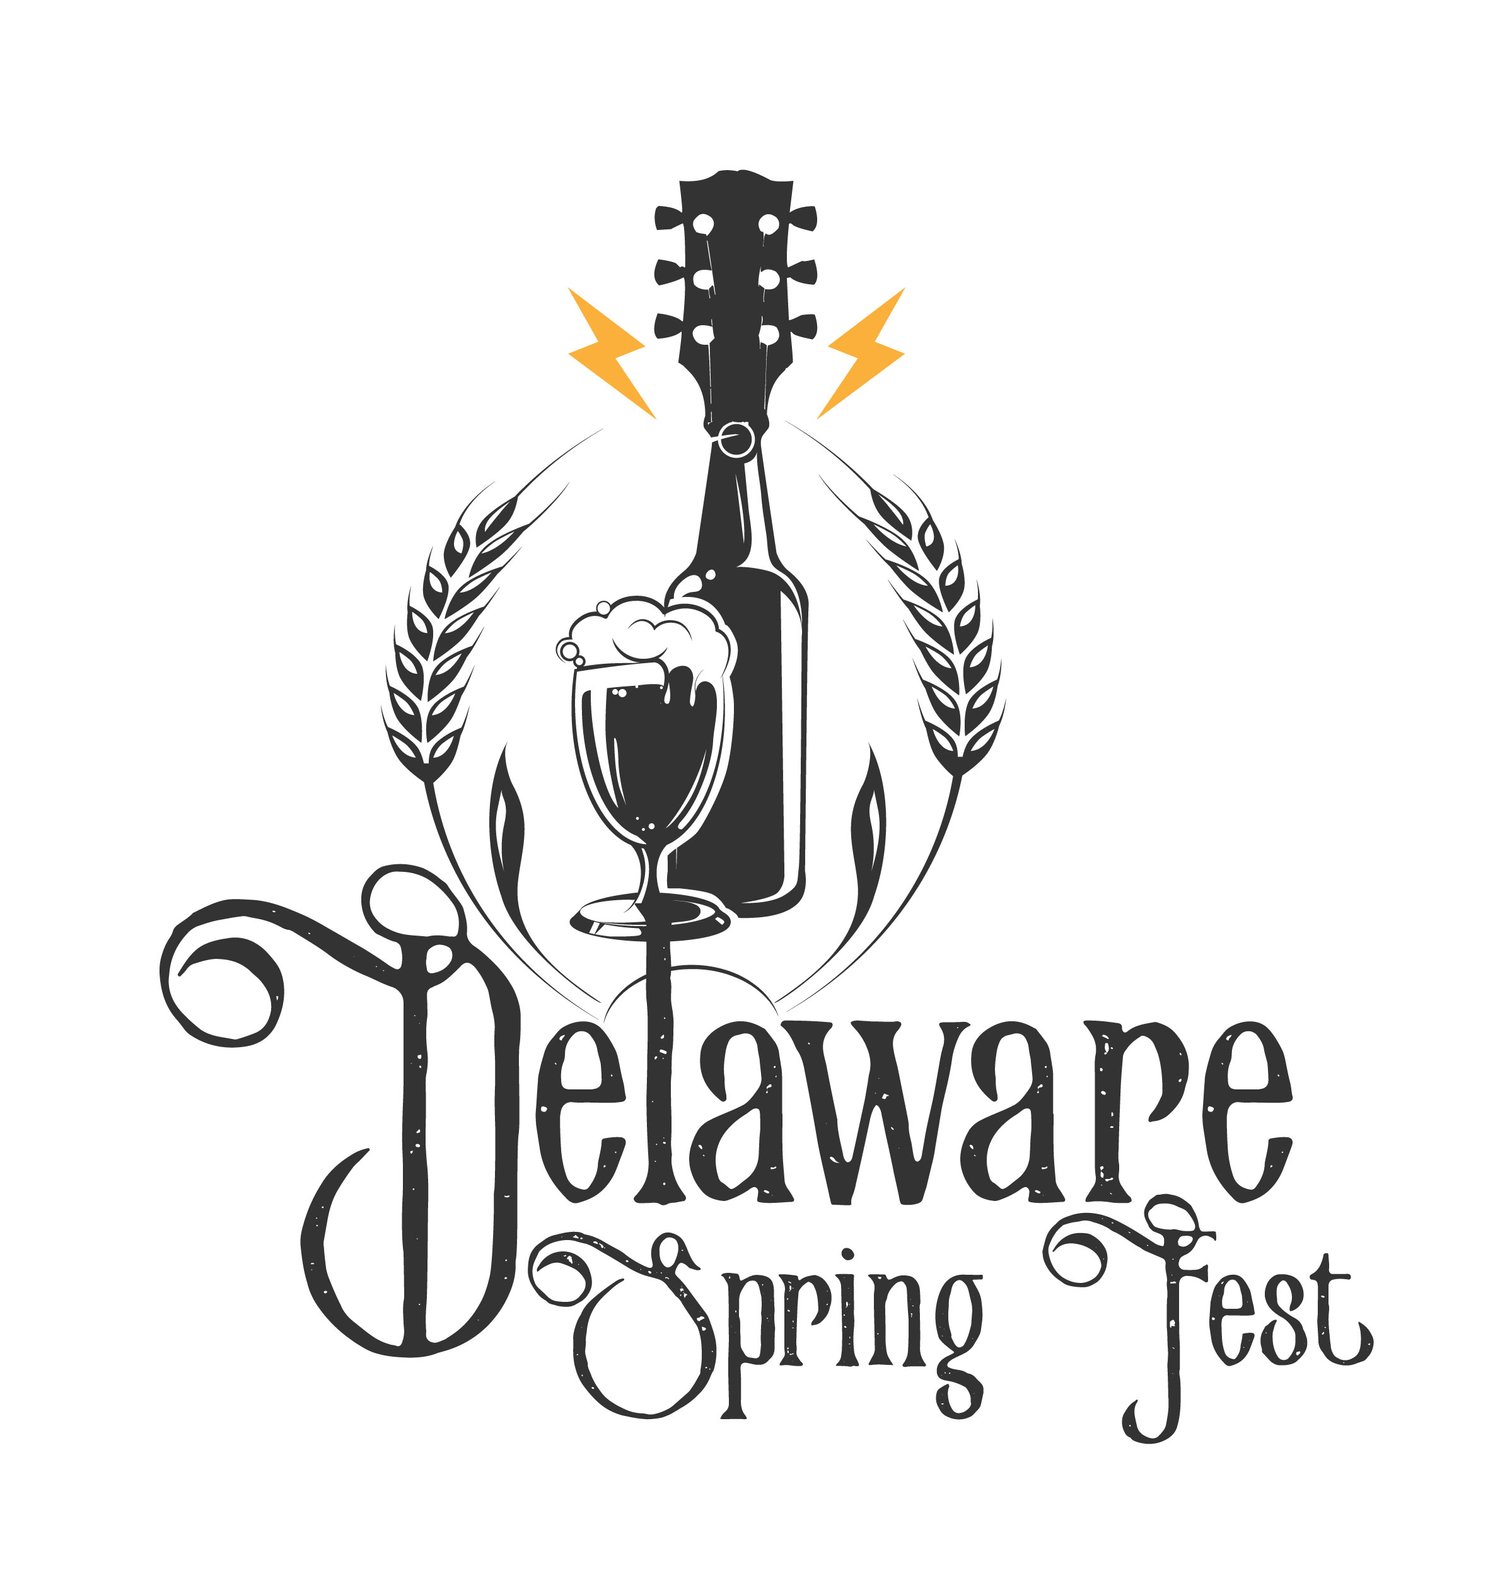 Delaware Spring Fest